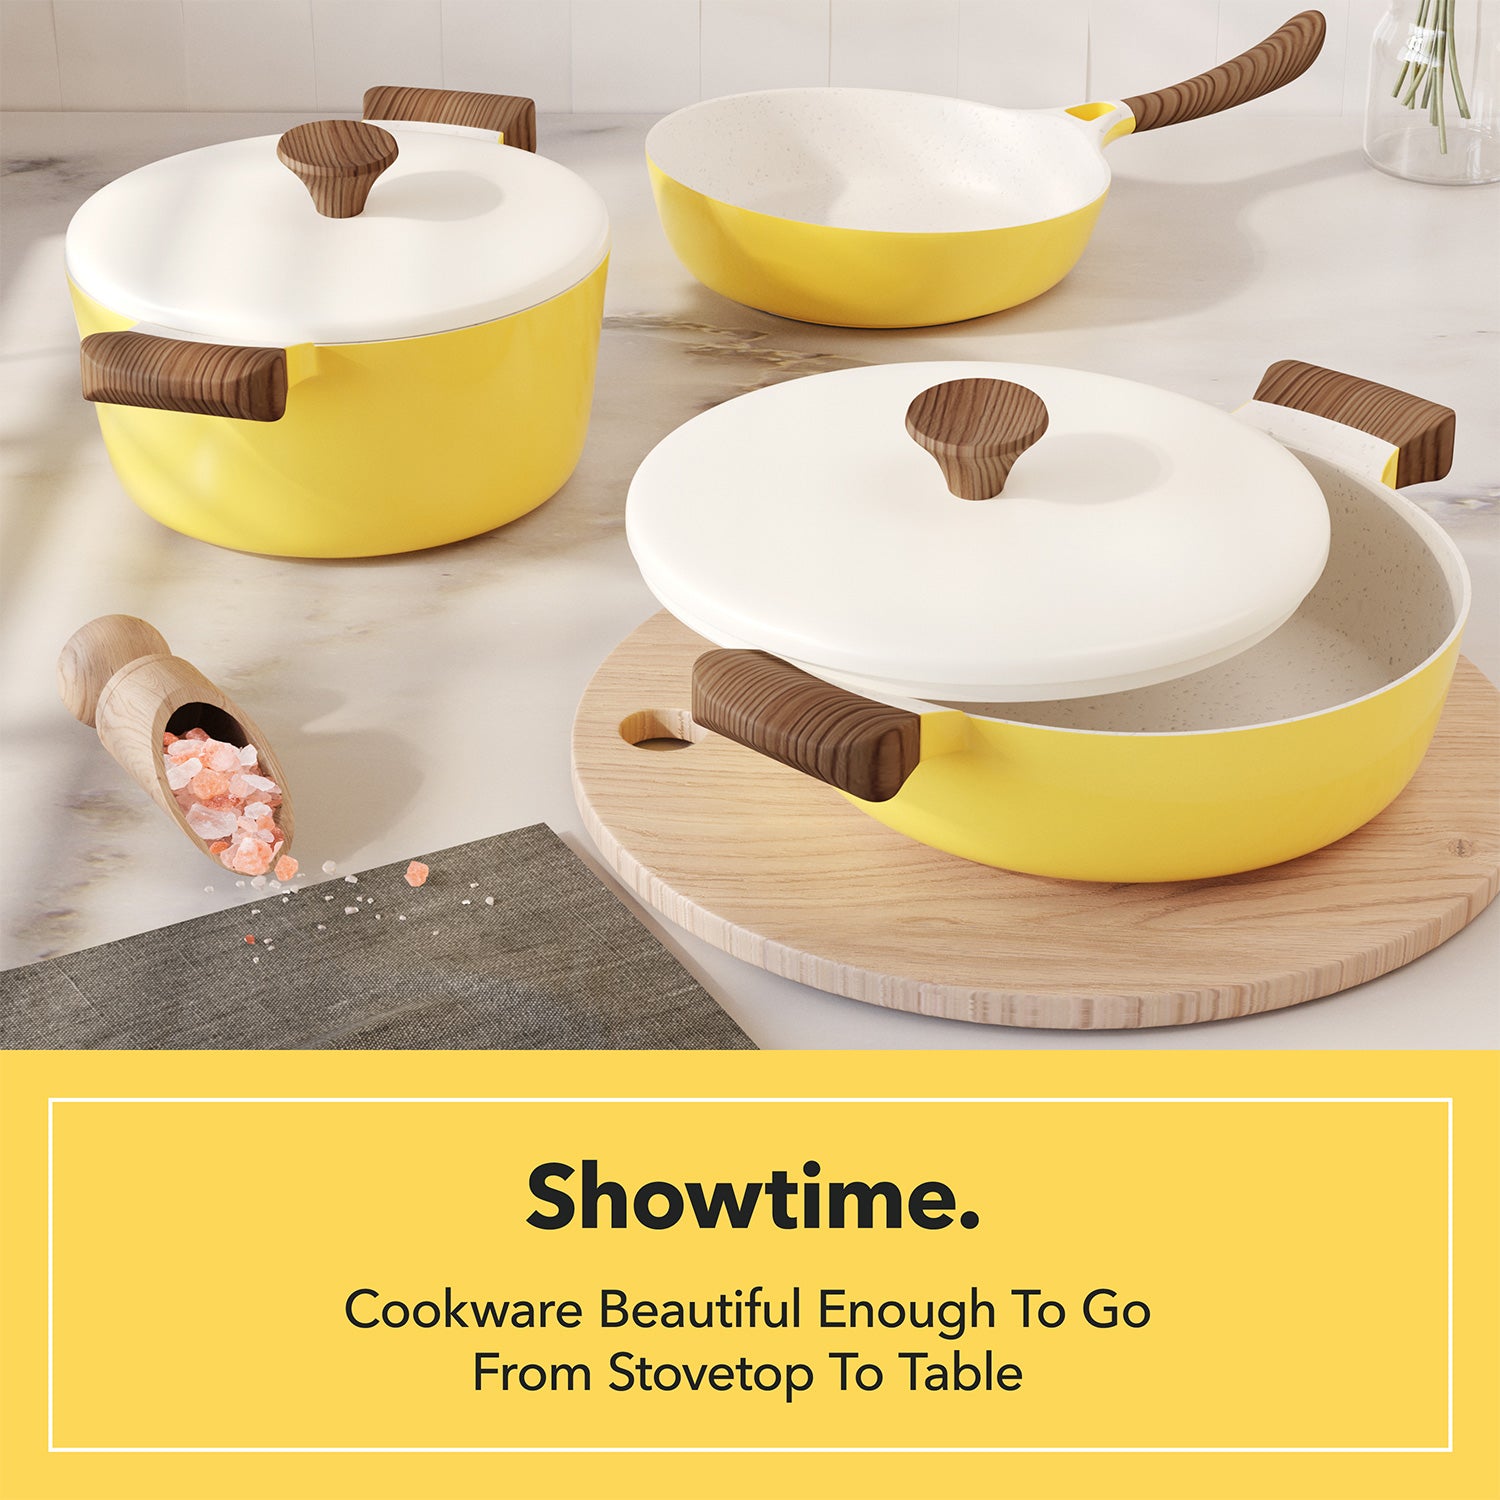 Get Cooking! Stackable 8-Piece Nonstick Cookware Set